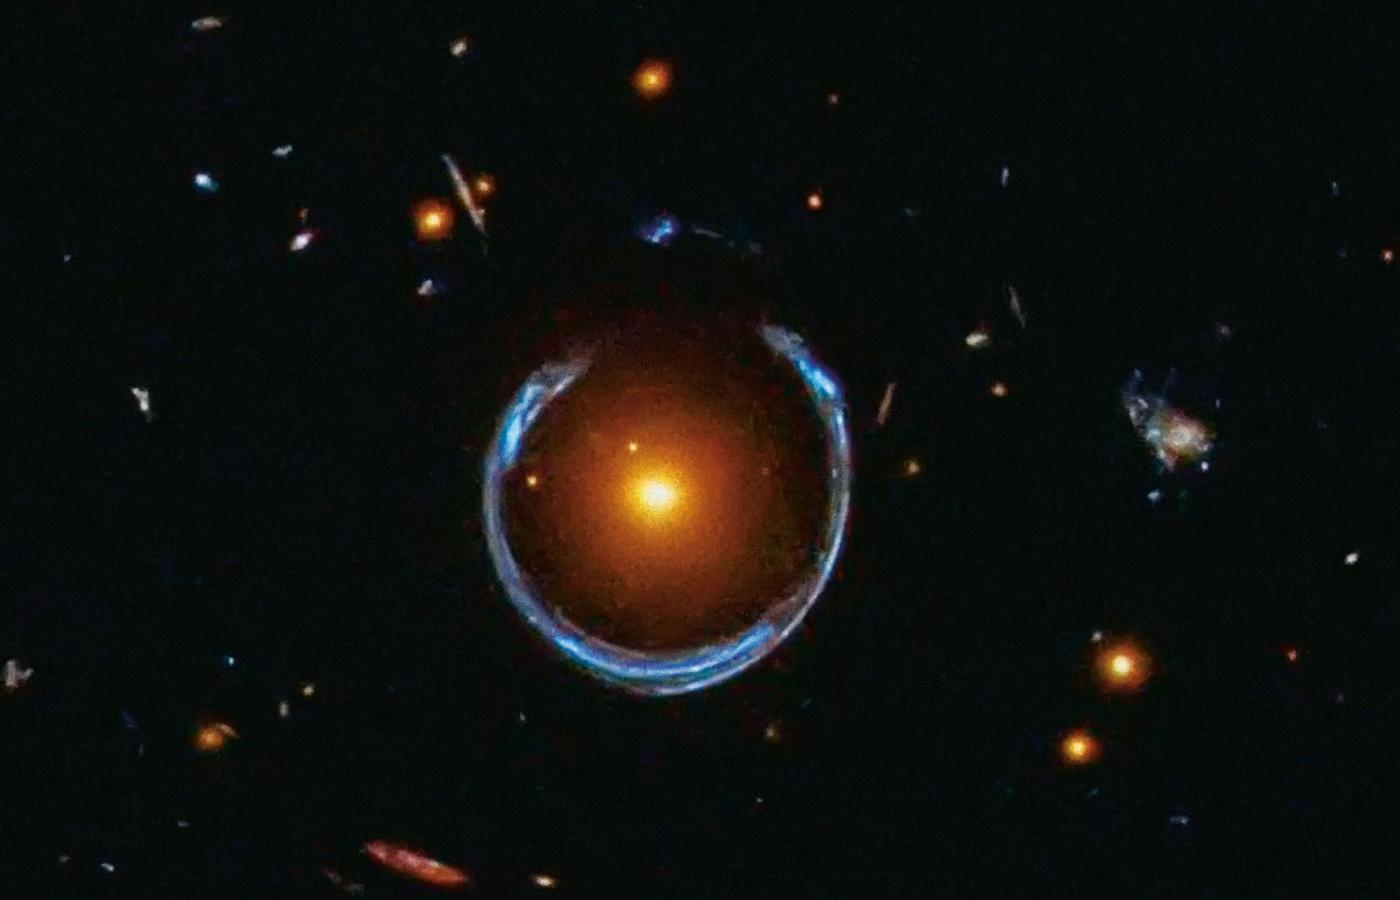 Przykład soczewkowania grawitacyjnego. Rolę soczewki pełni pole grawitacyjne żółtobrązowej galaktyki odległej od nas o 5 mld lat świetlnych. Niebieska podkowa jest utworzona ze zlanych ze sobą obrazów galaktyki leżącej w odległości 11 mld lat świetlnych.